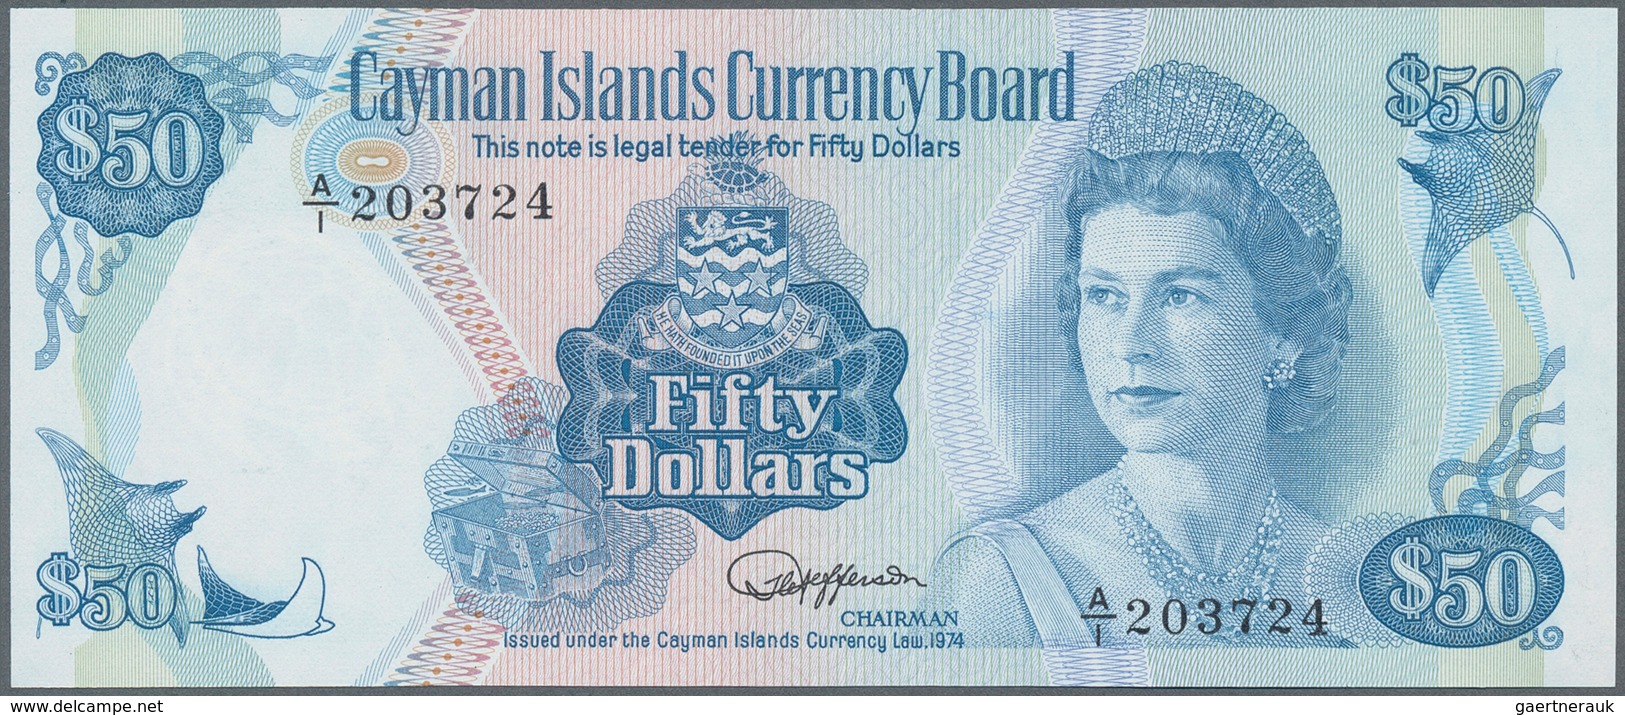 01264 Cayman Islands: 50 Dollras L.1974, P. 10 In Condition: UNC. - Kaaimaneilanden